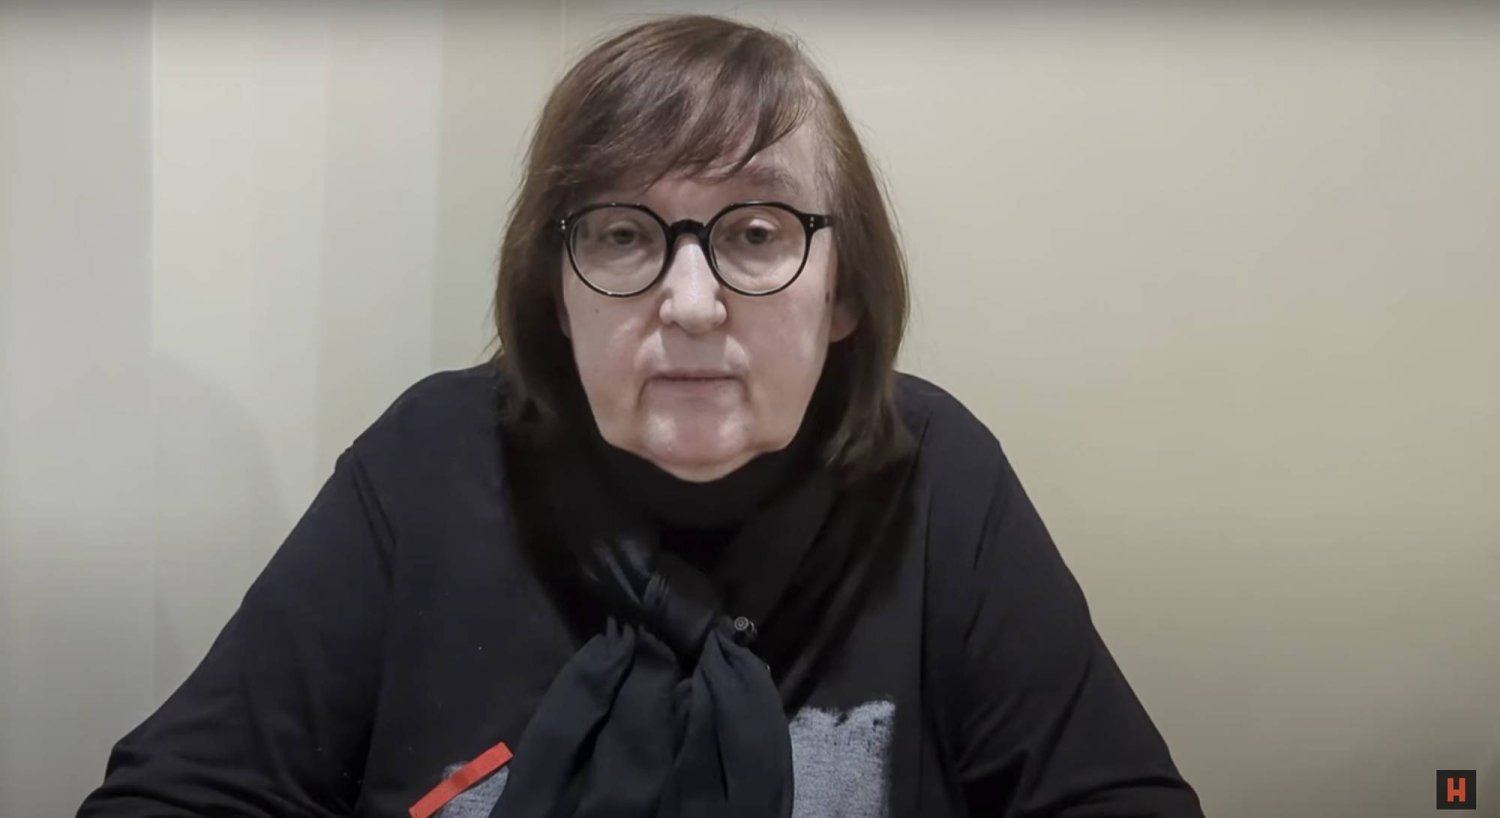 لقطة من فيديو تظهر فيها ليودميلا نافالنايا والدة المعارض الروسي أليكسي نافالني (أ.ب)